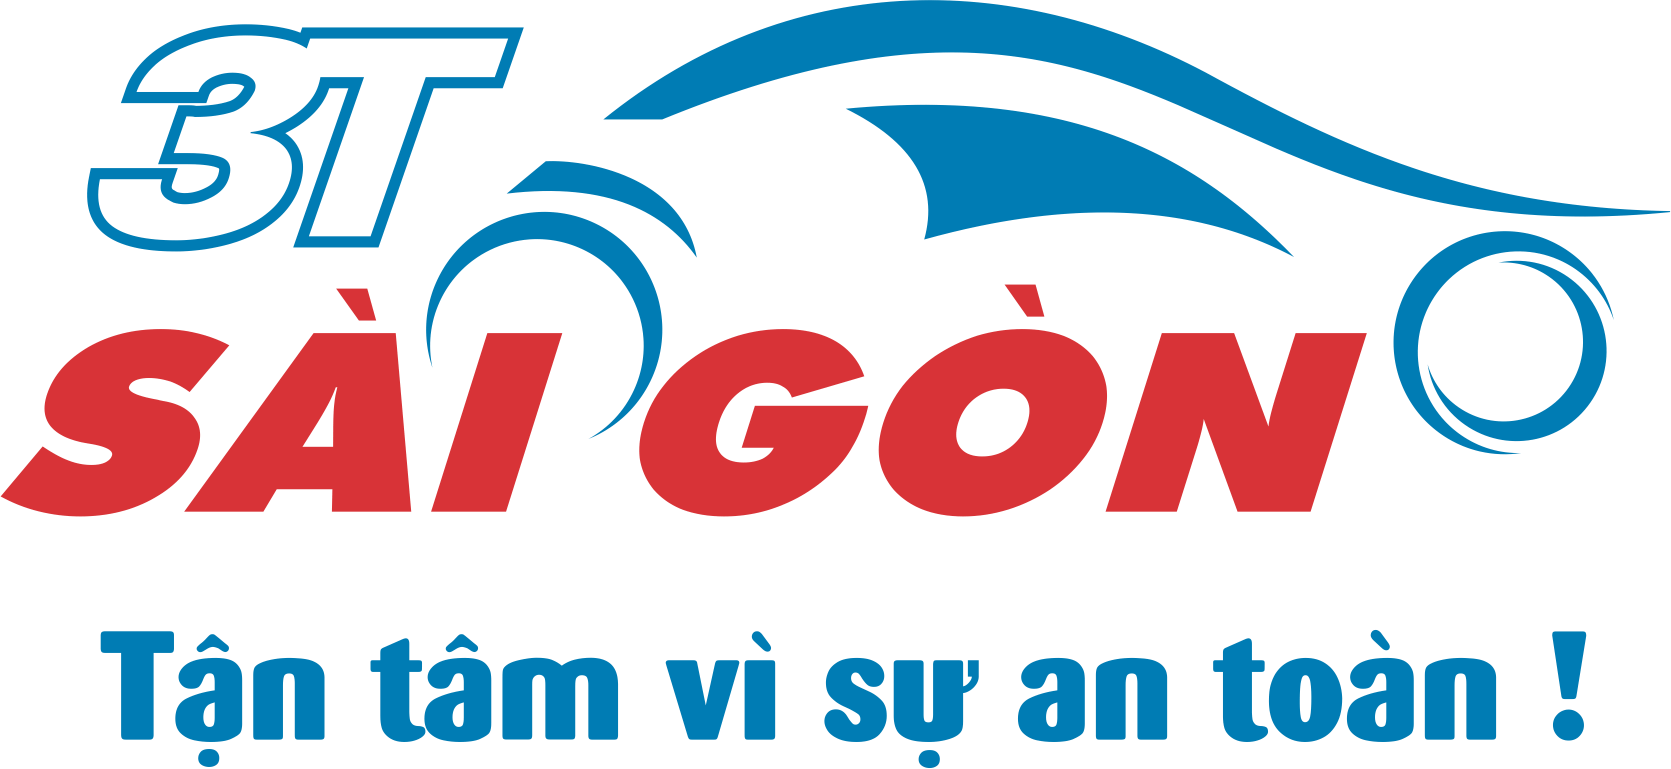 3T Sai Gon logo